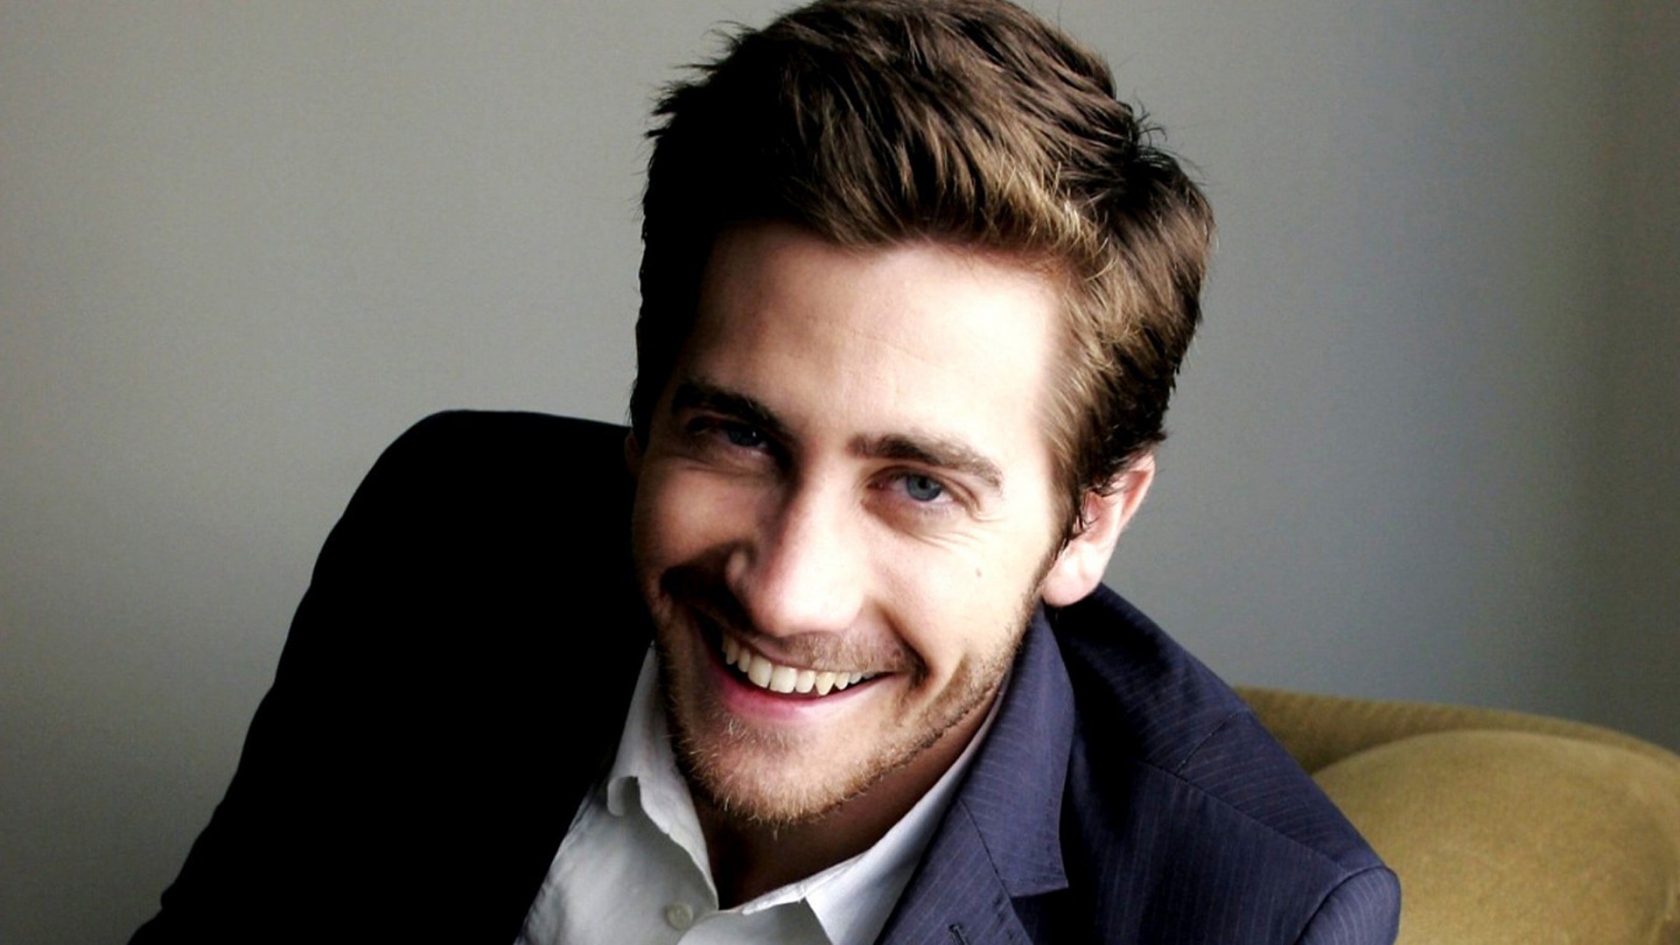 Jake Gyllenhaal Smile for 1680 x 945 HDTV resolution